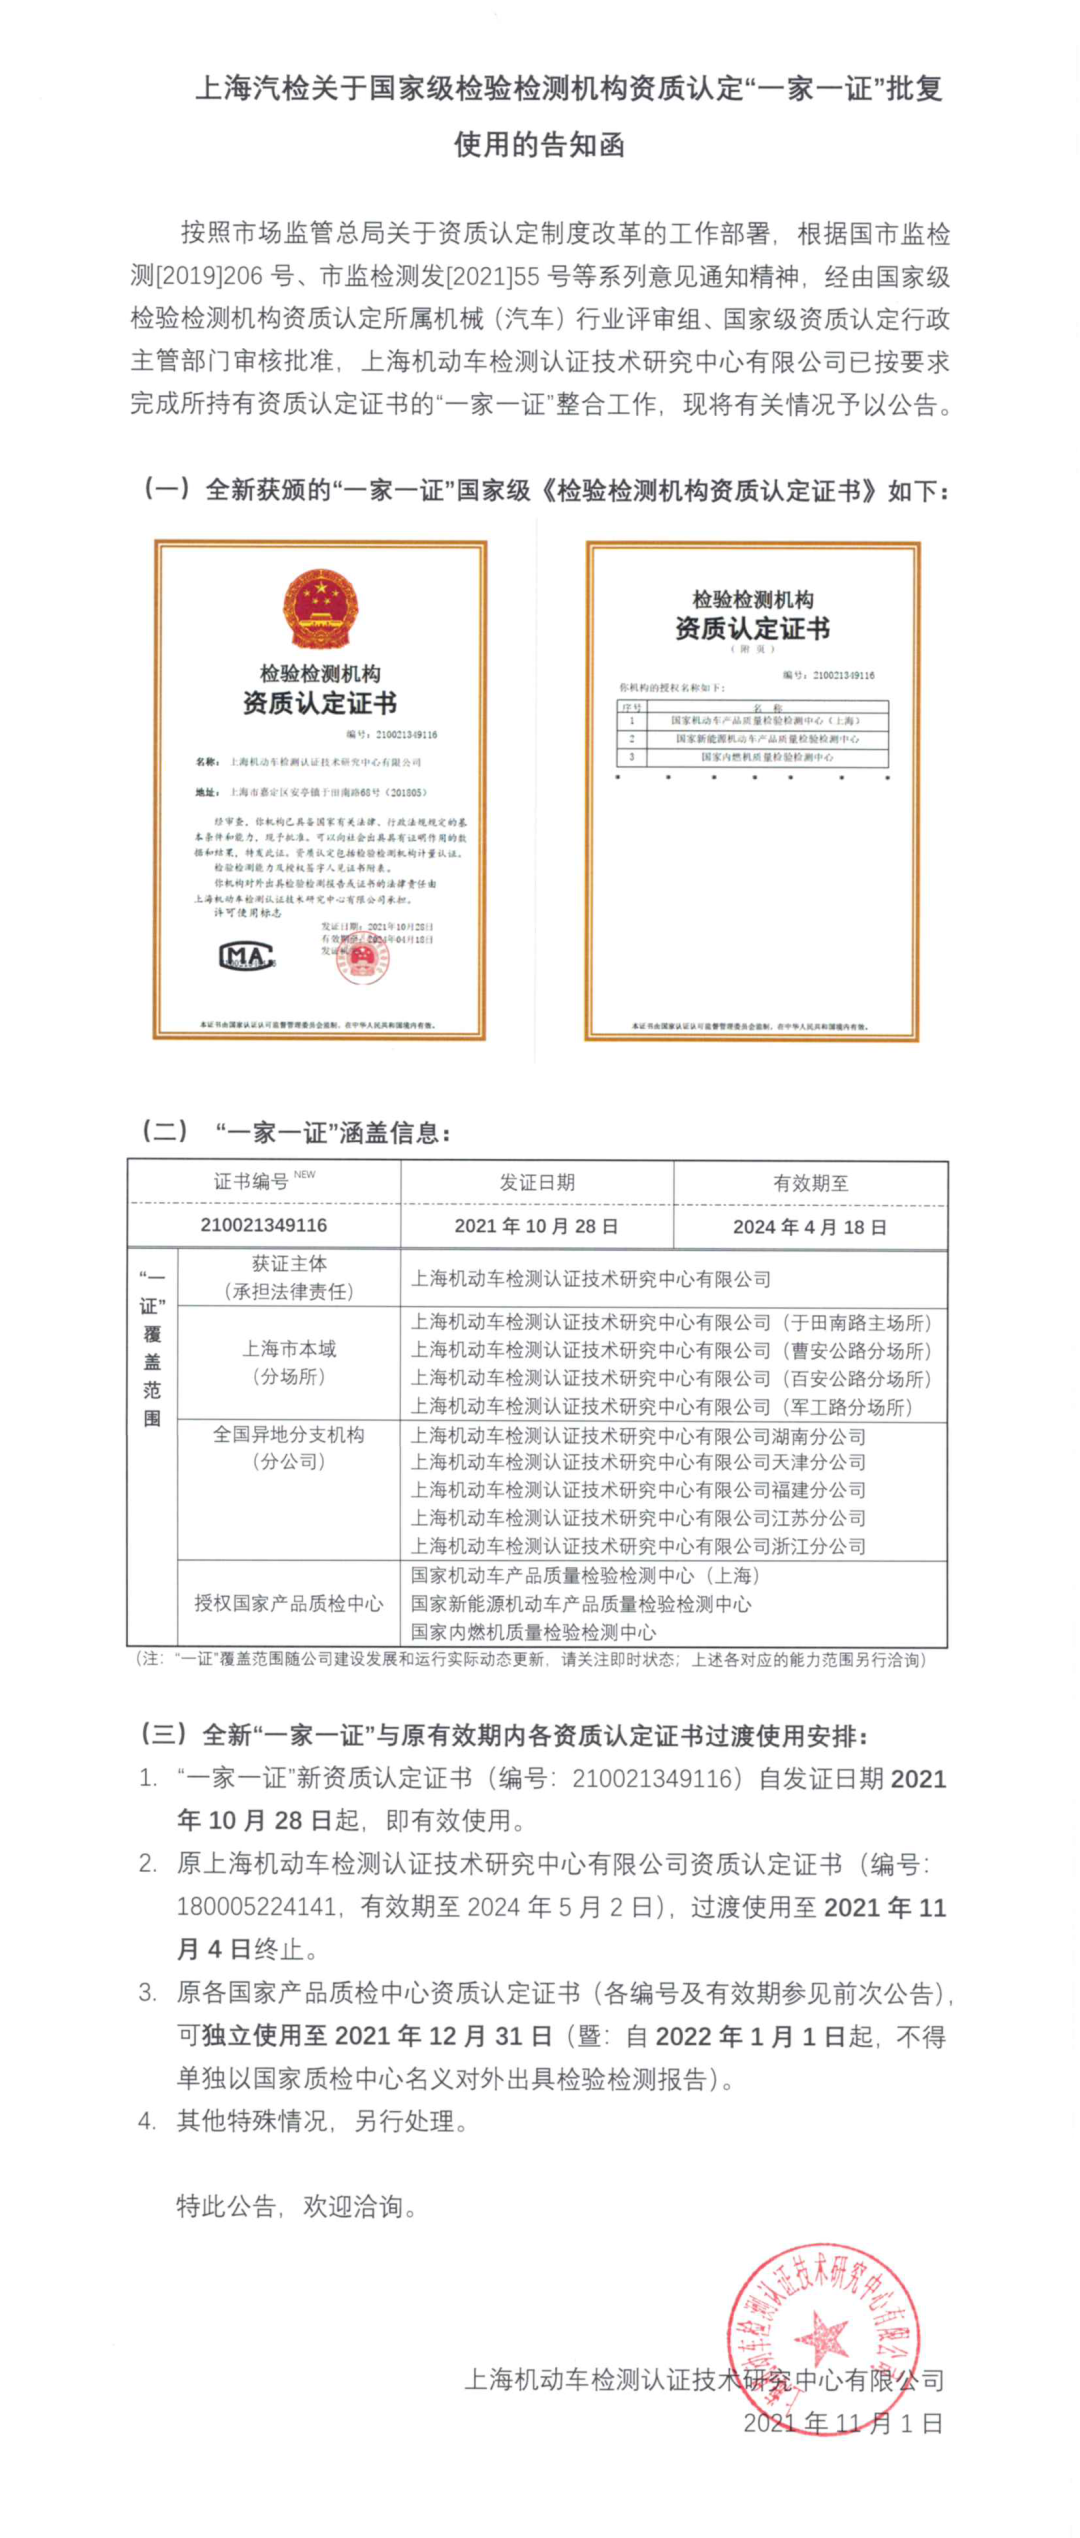 上海汽检关于国家级检验检测机构资质认定“一家一证”批复使用的告知函